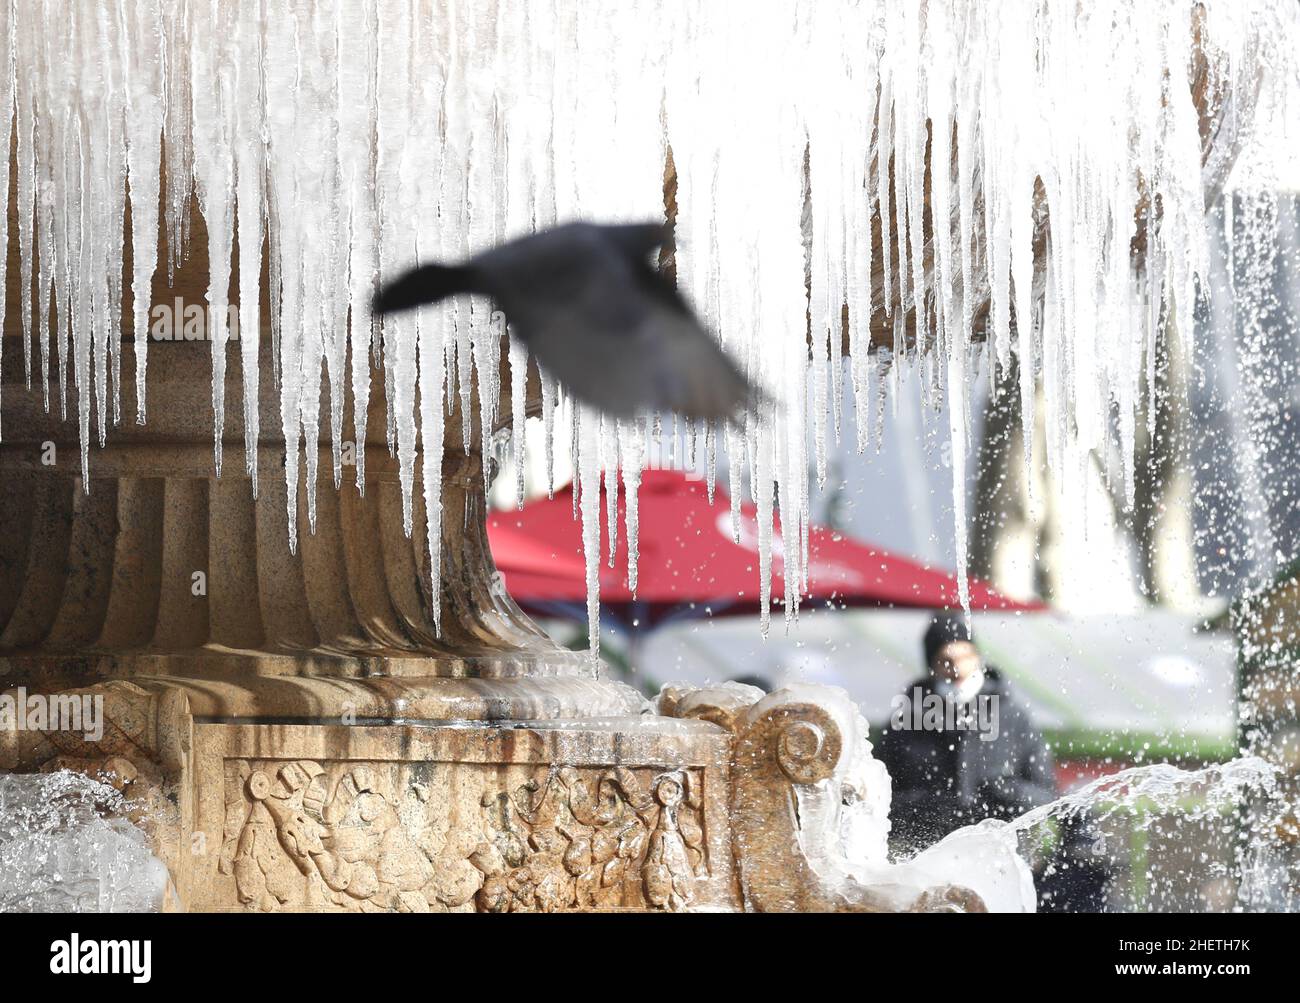 New York, Usa. 12th Januar 2022. Eiszapfen bilden sich am Mittwoch, den 12. Januar 2022, auf dem Josephine Shaw Lowell Memorial Fountain im Bryant Park in New York City. Die Temperaturen in New York stiegen heute über die Gefriermarke, aber es wird erwartet, dass sie wieder unter den Gefrierpunkt fallen werden, wobei für das kommende Wochenende Schnee möglich ist. Foto von John Angelillo/UPI Credit: UPI/Alamy Live News Stockfoto